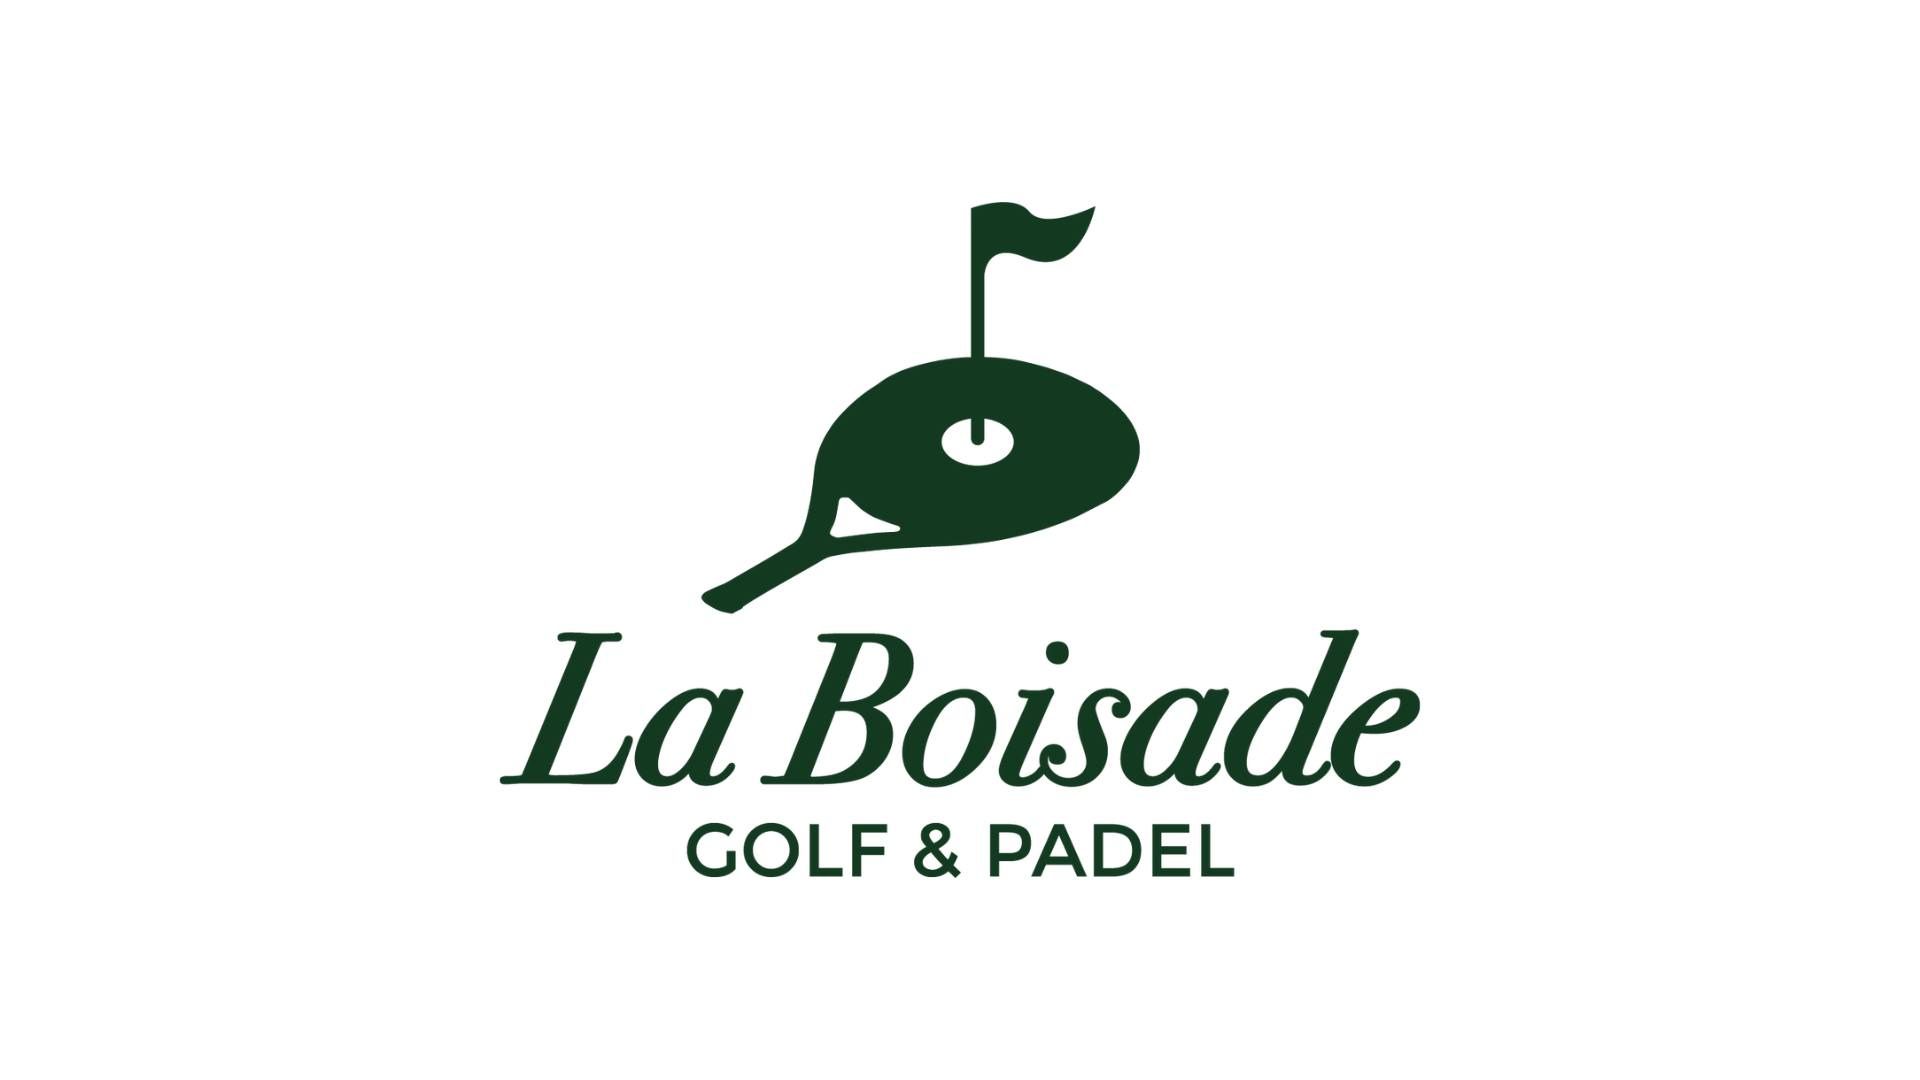 Eine Veranstaltung, die Golf und Golf vereint padel in Toulouse Padel Verein!